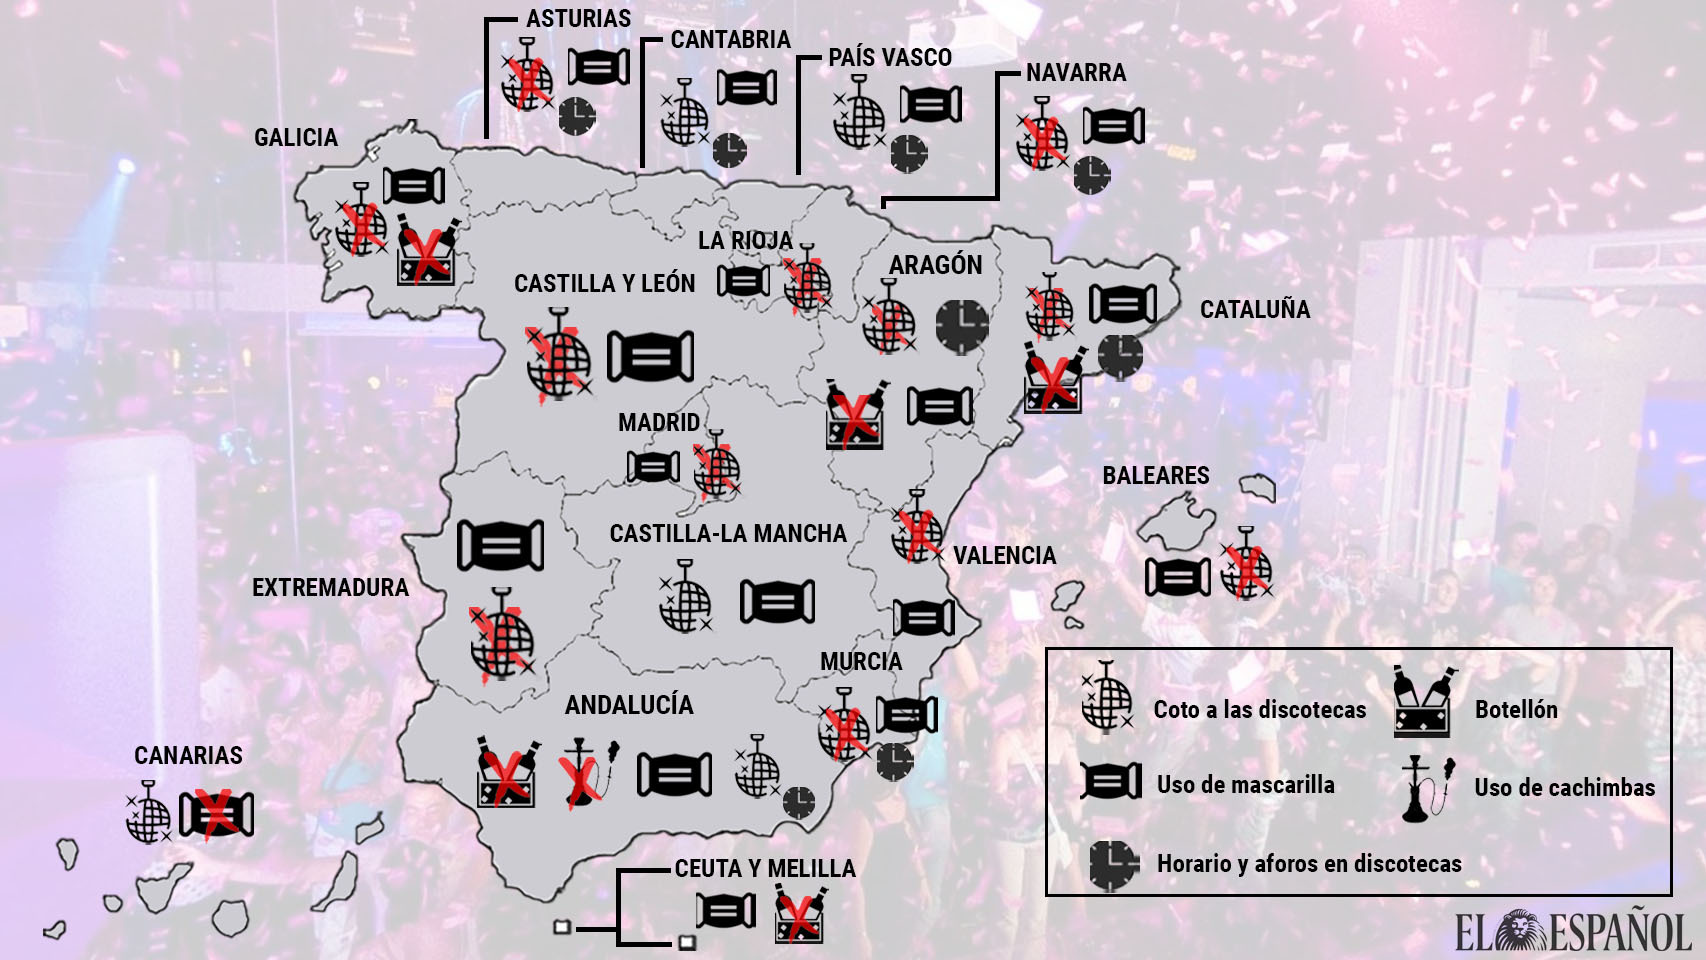 Mapa del ocio nocturno por comunidades autónomas